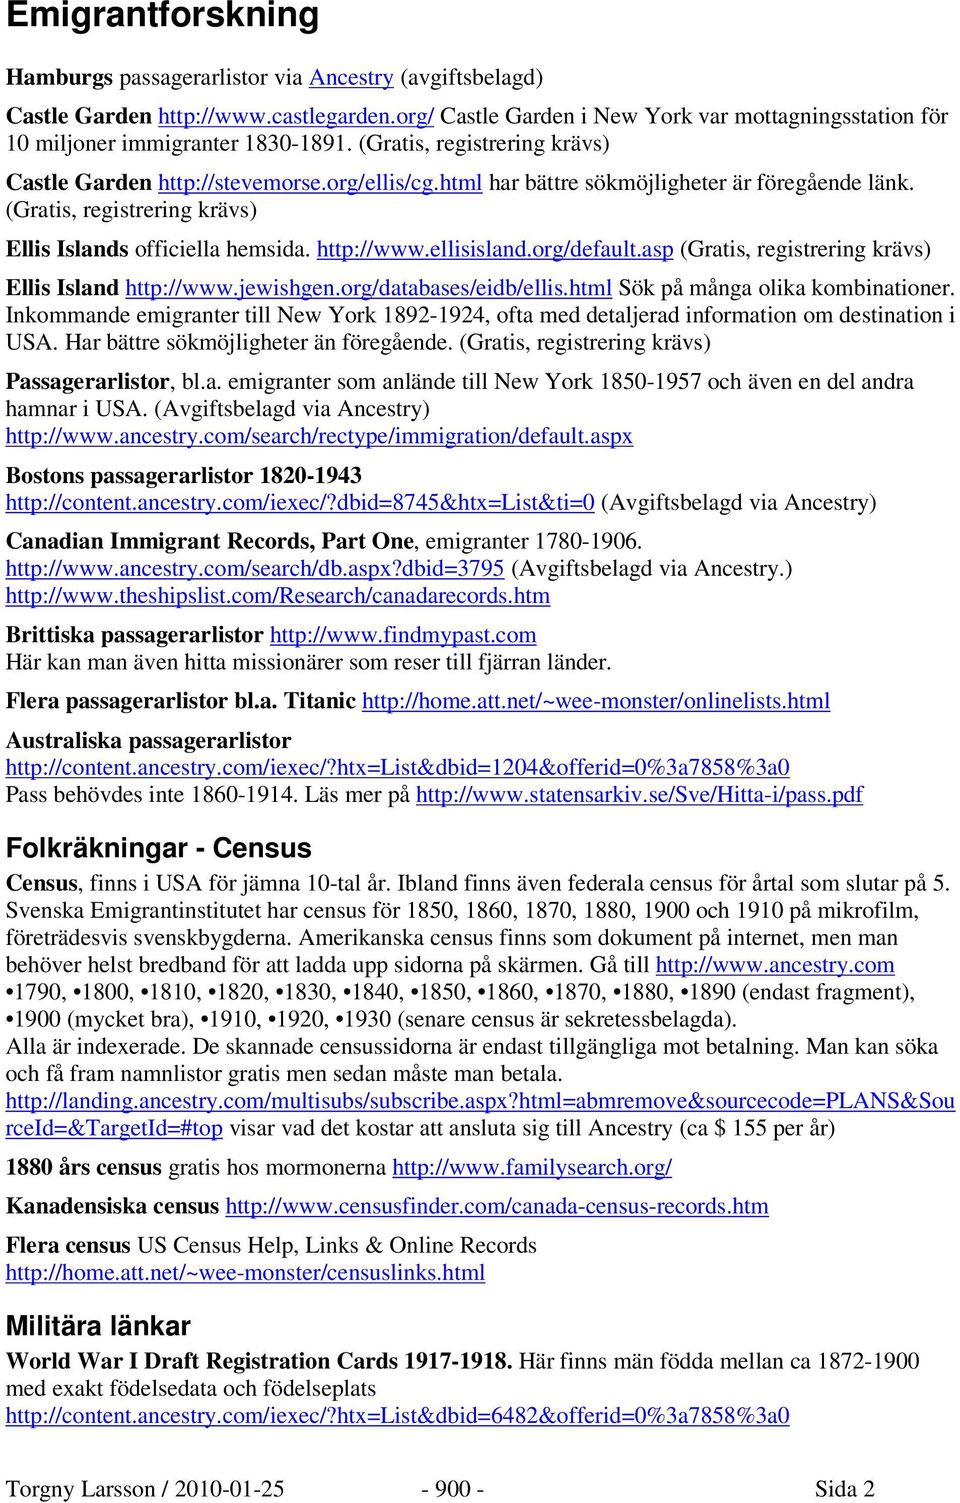 ellisisland.org/default.asp (Gratis, registrering krävs) Ellis Island http://www.jewishgen.org/databases/eidb/ellis.html Sök på många olika kombinationer.